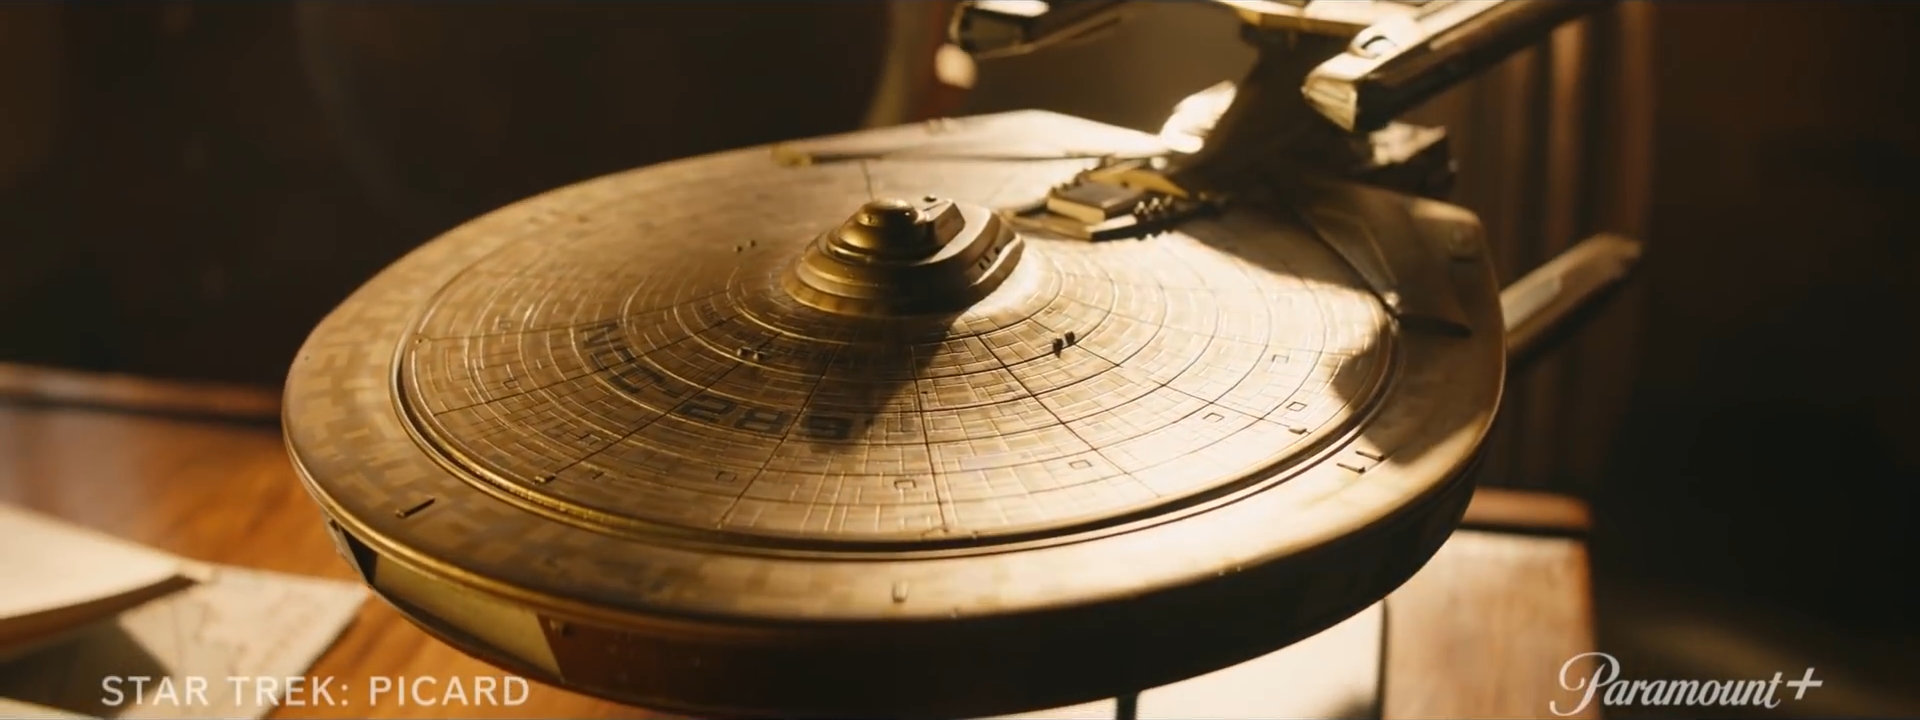 Modell der Stargazer im Teasertrailer für Star Trek: Picard Season 2 (Bild: ViacomCBS)